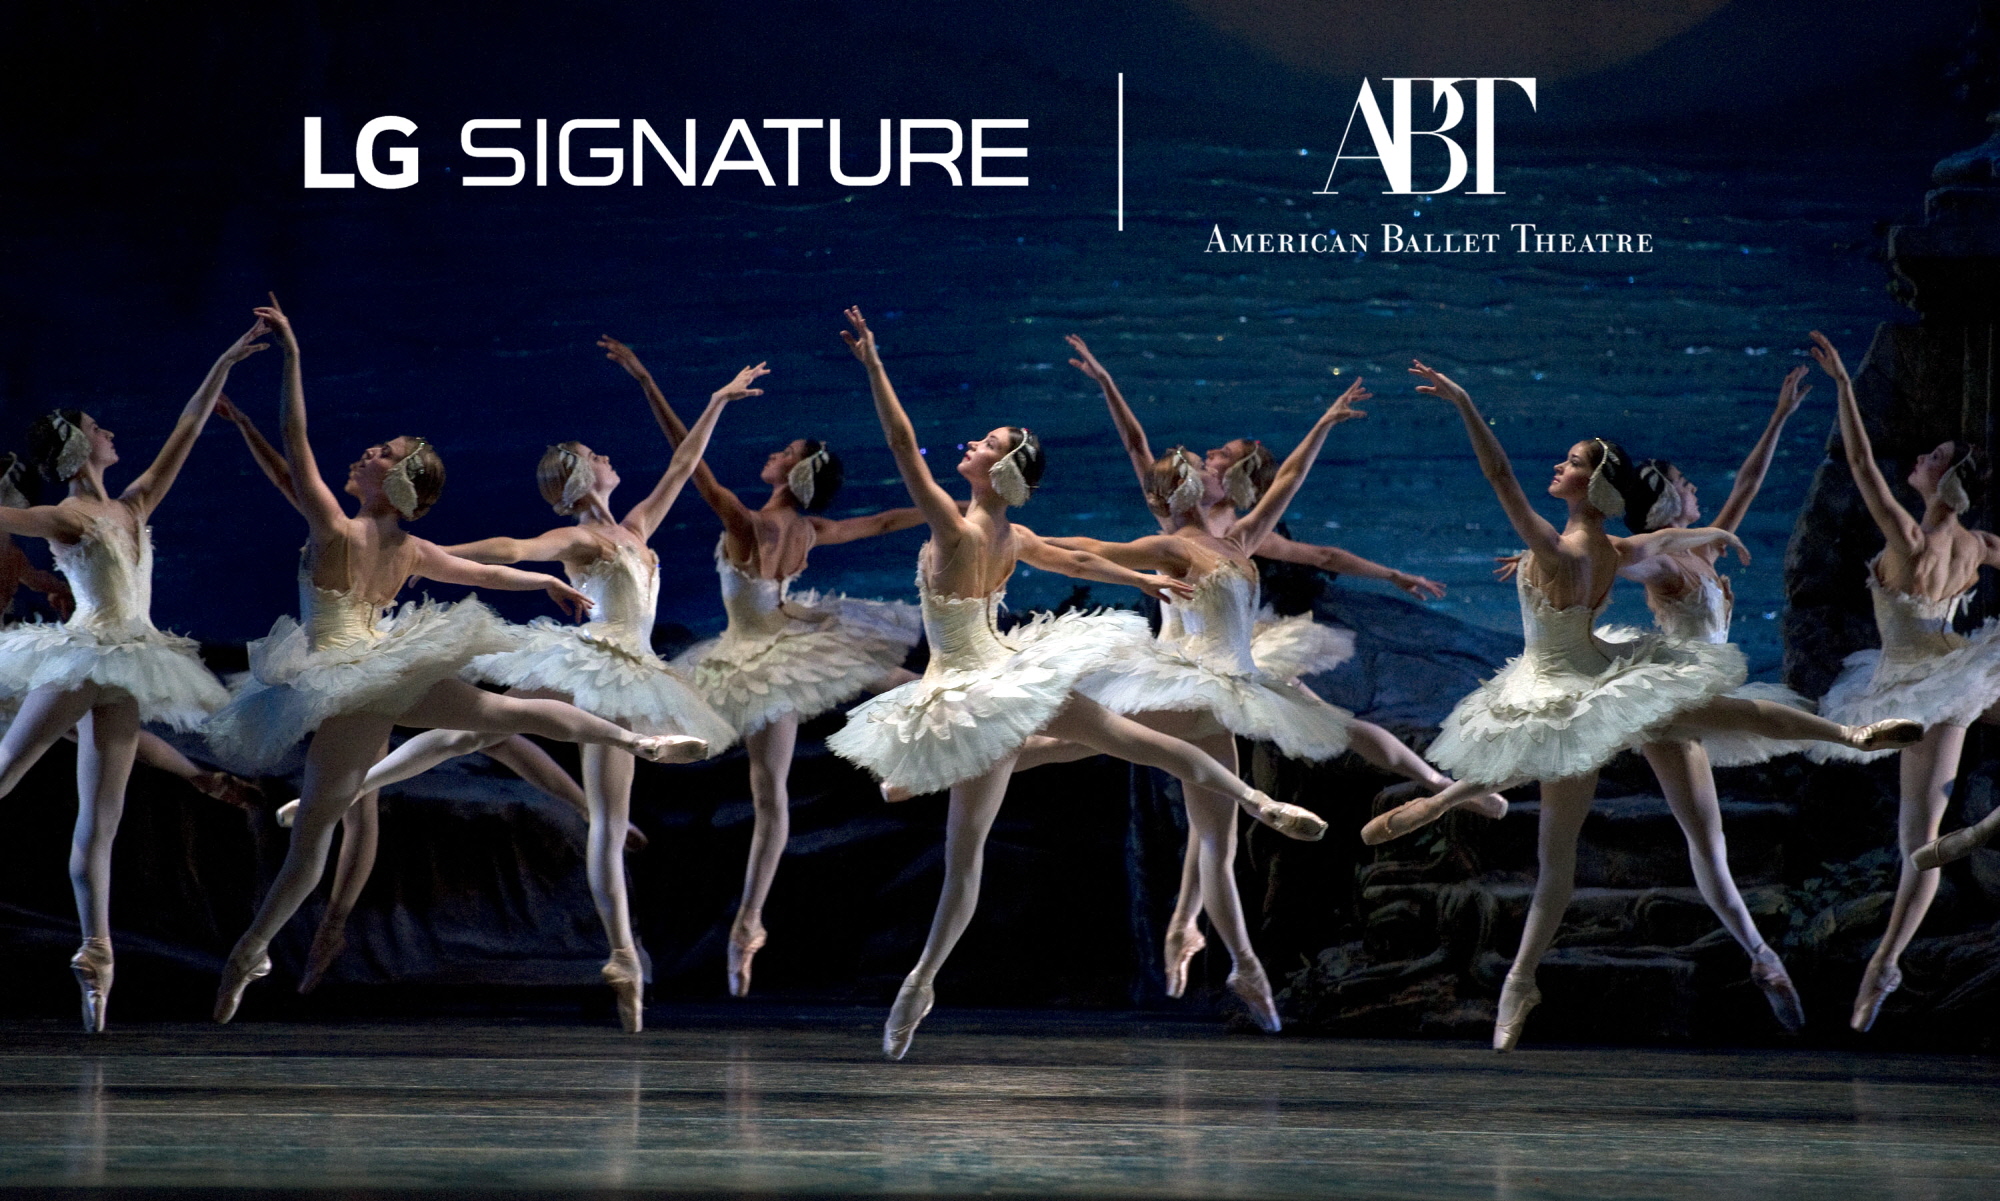 LG전자가 최근 美 아메리칸발레시어터(American Ballet Theater, ABT)와 파트너십을 체결하고 올해부터 향후 3년간 ABT를 공식 후원한다.